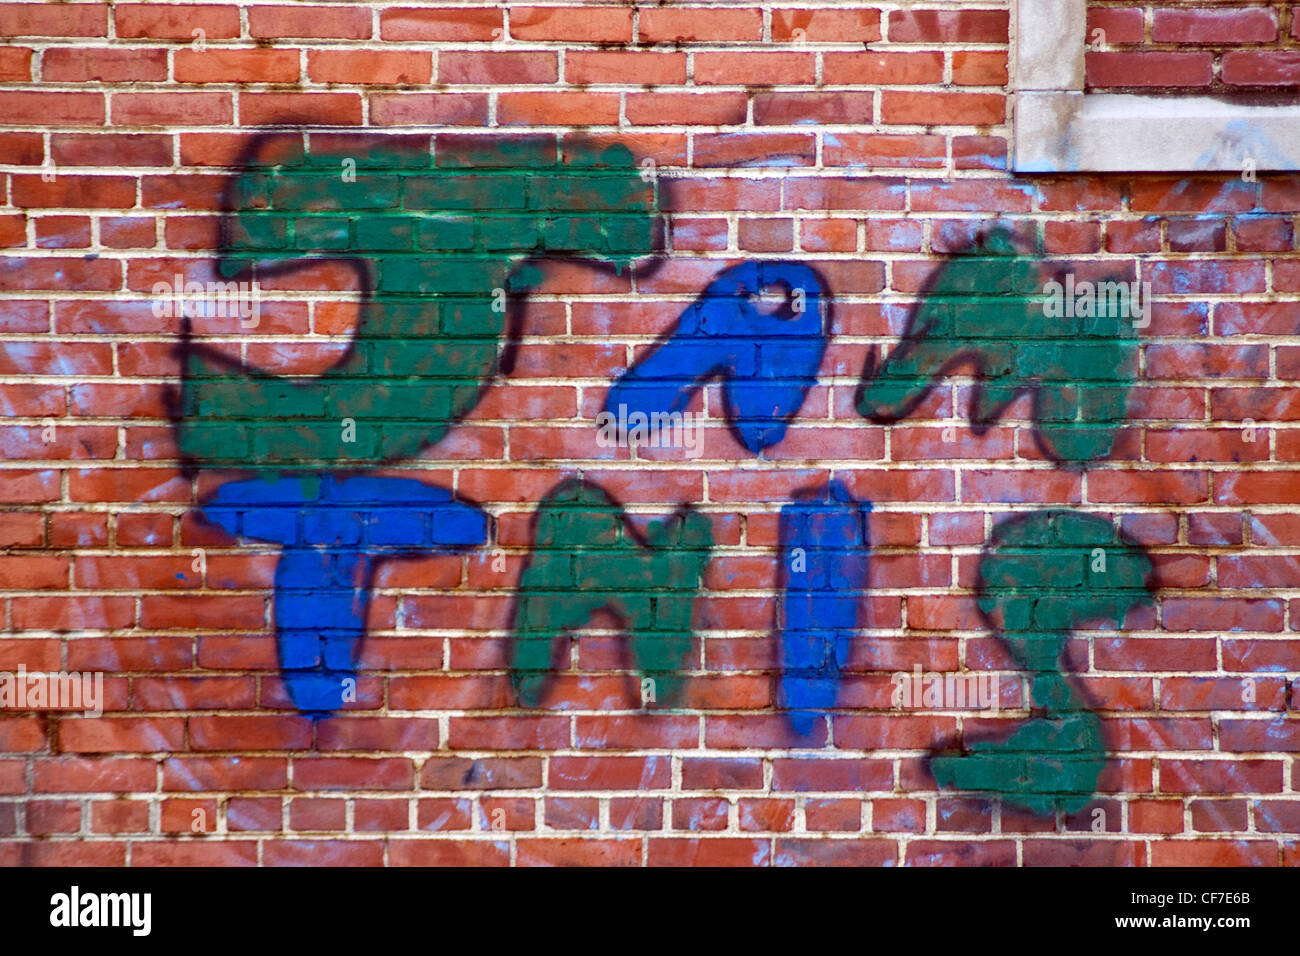 'JAM' Ce spray graffiti peint sur un mur en brique dans un entrepôt Shirlington Arlington County zone urbaine non constituées en société Banque D'Images